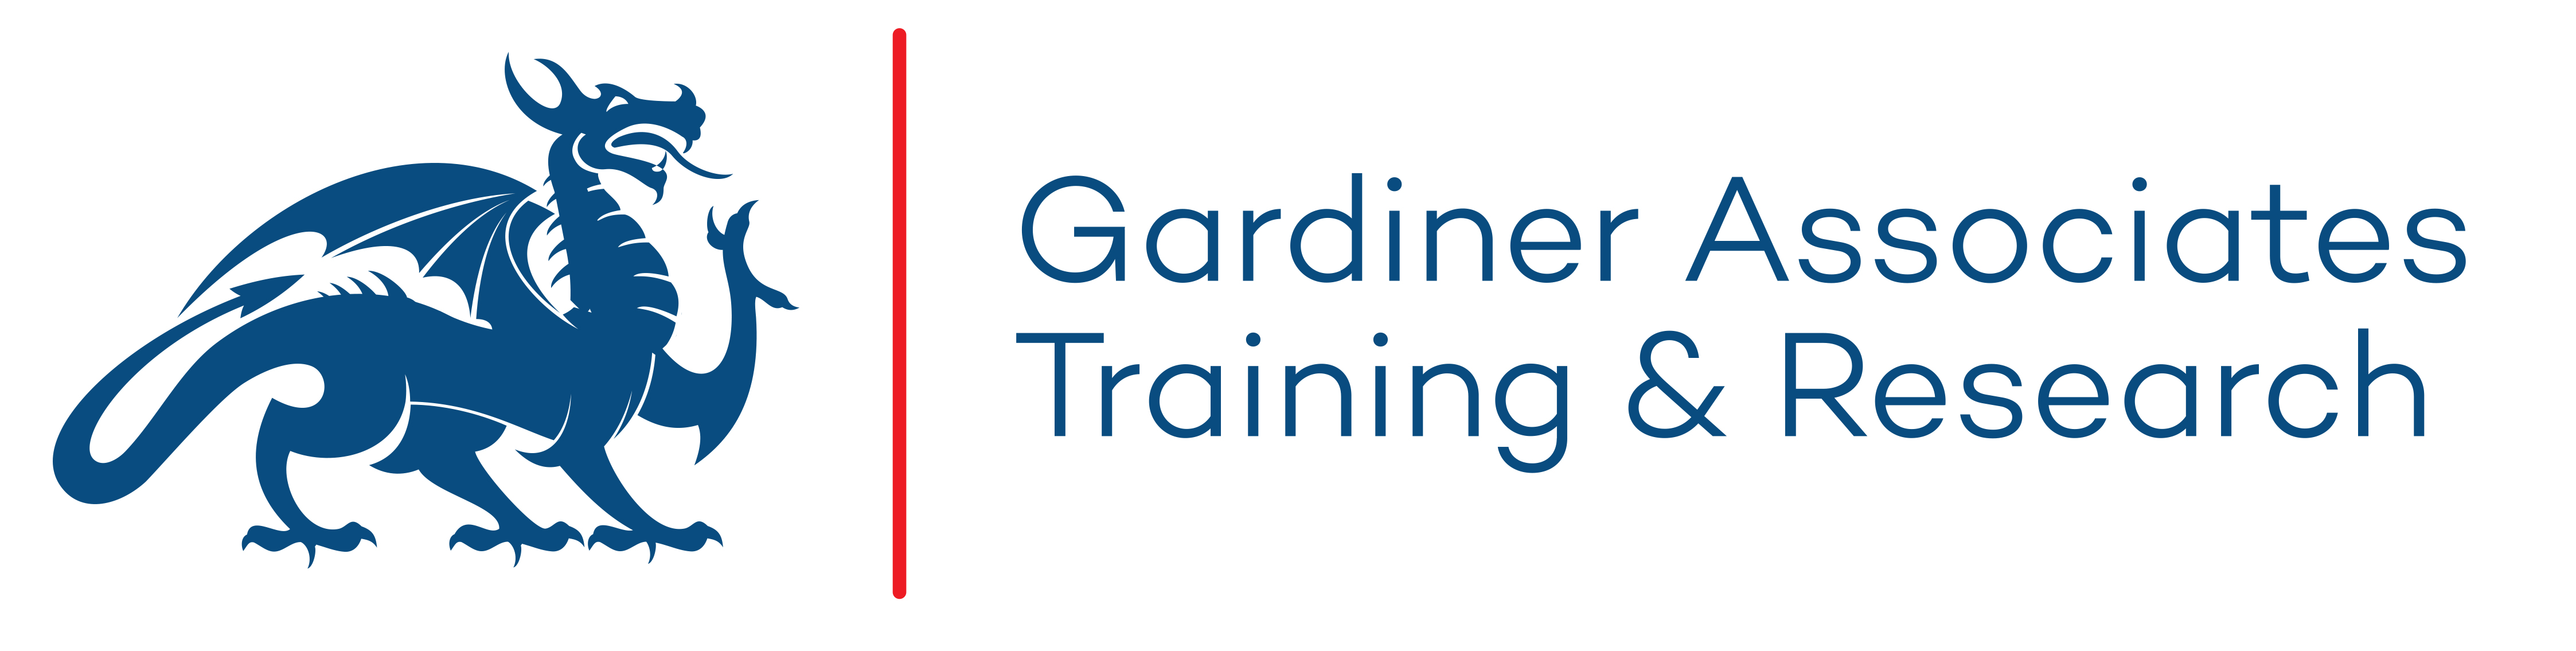 Gardiner Associates Fire Ltd.